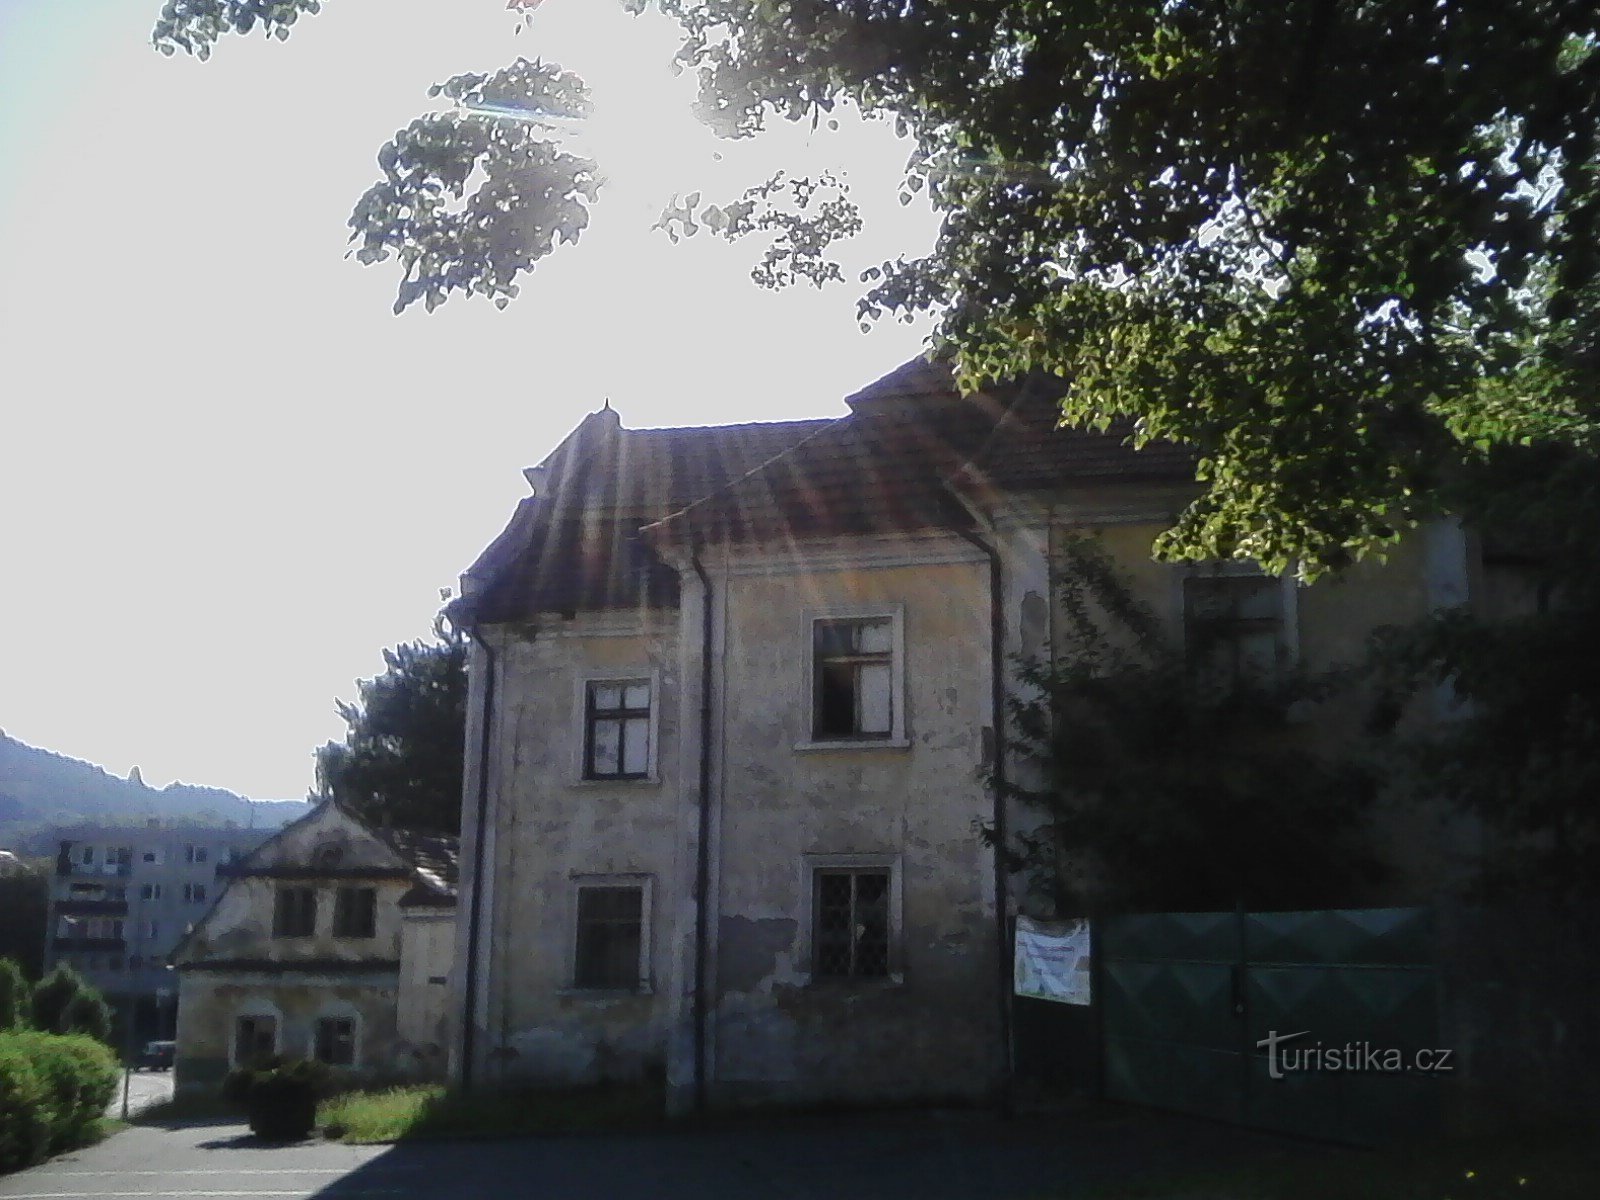 1. New castle Votice. Originally the house of Votice burgomaster Vít Paskéky from 1614.